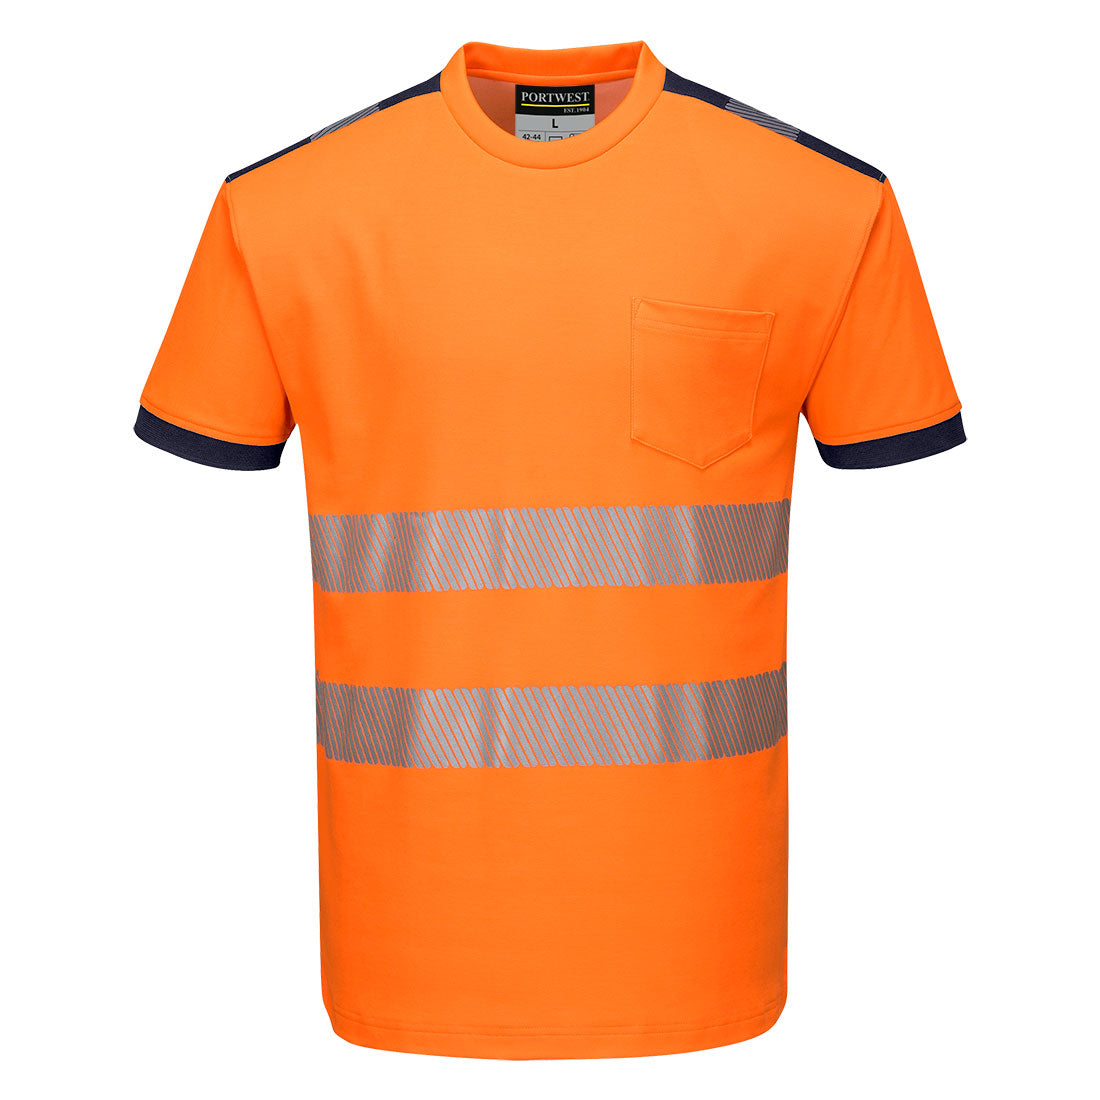 Portwest T181 PW3 Hi-Vis T-Shirt - Orange Navy